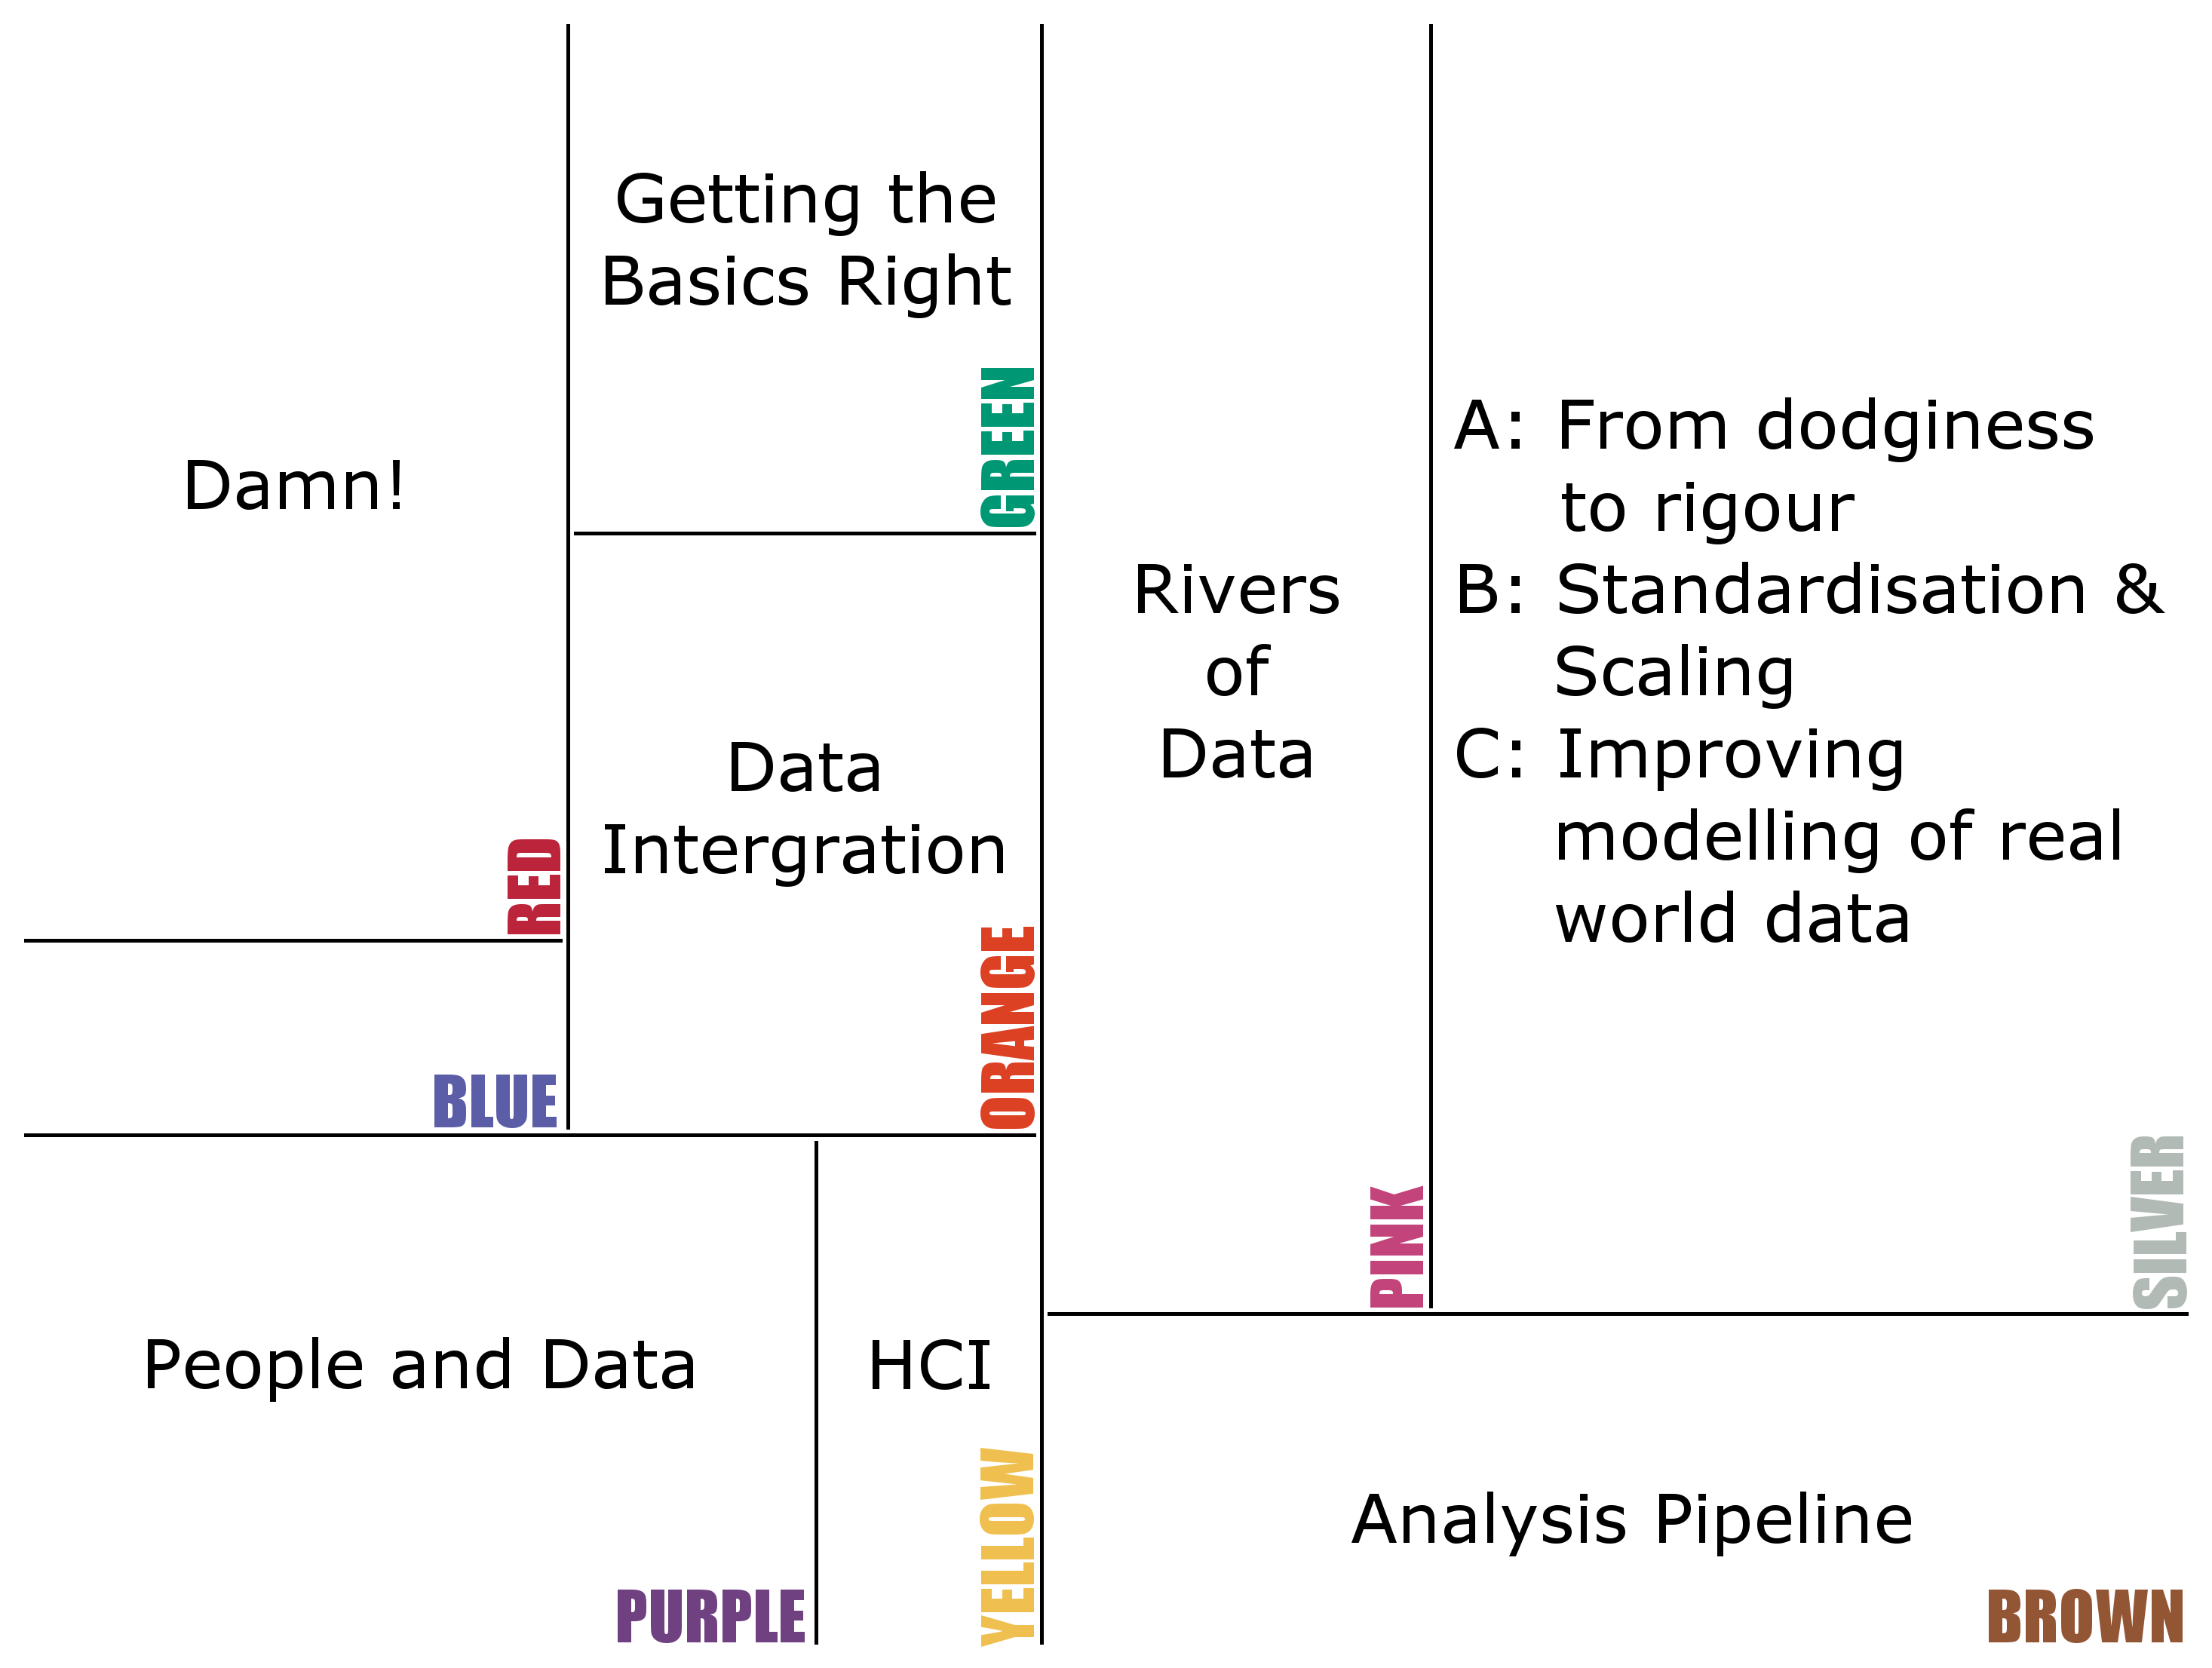 UK Health Data Analytics Workshop - Research Challenges